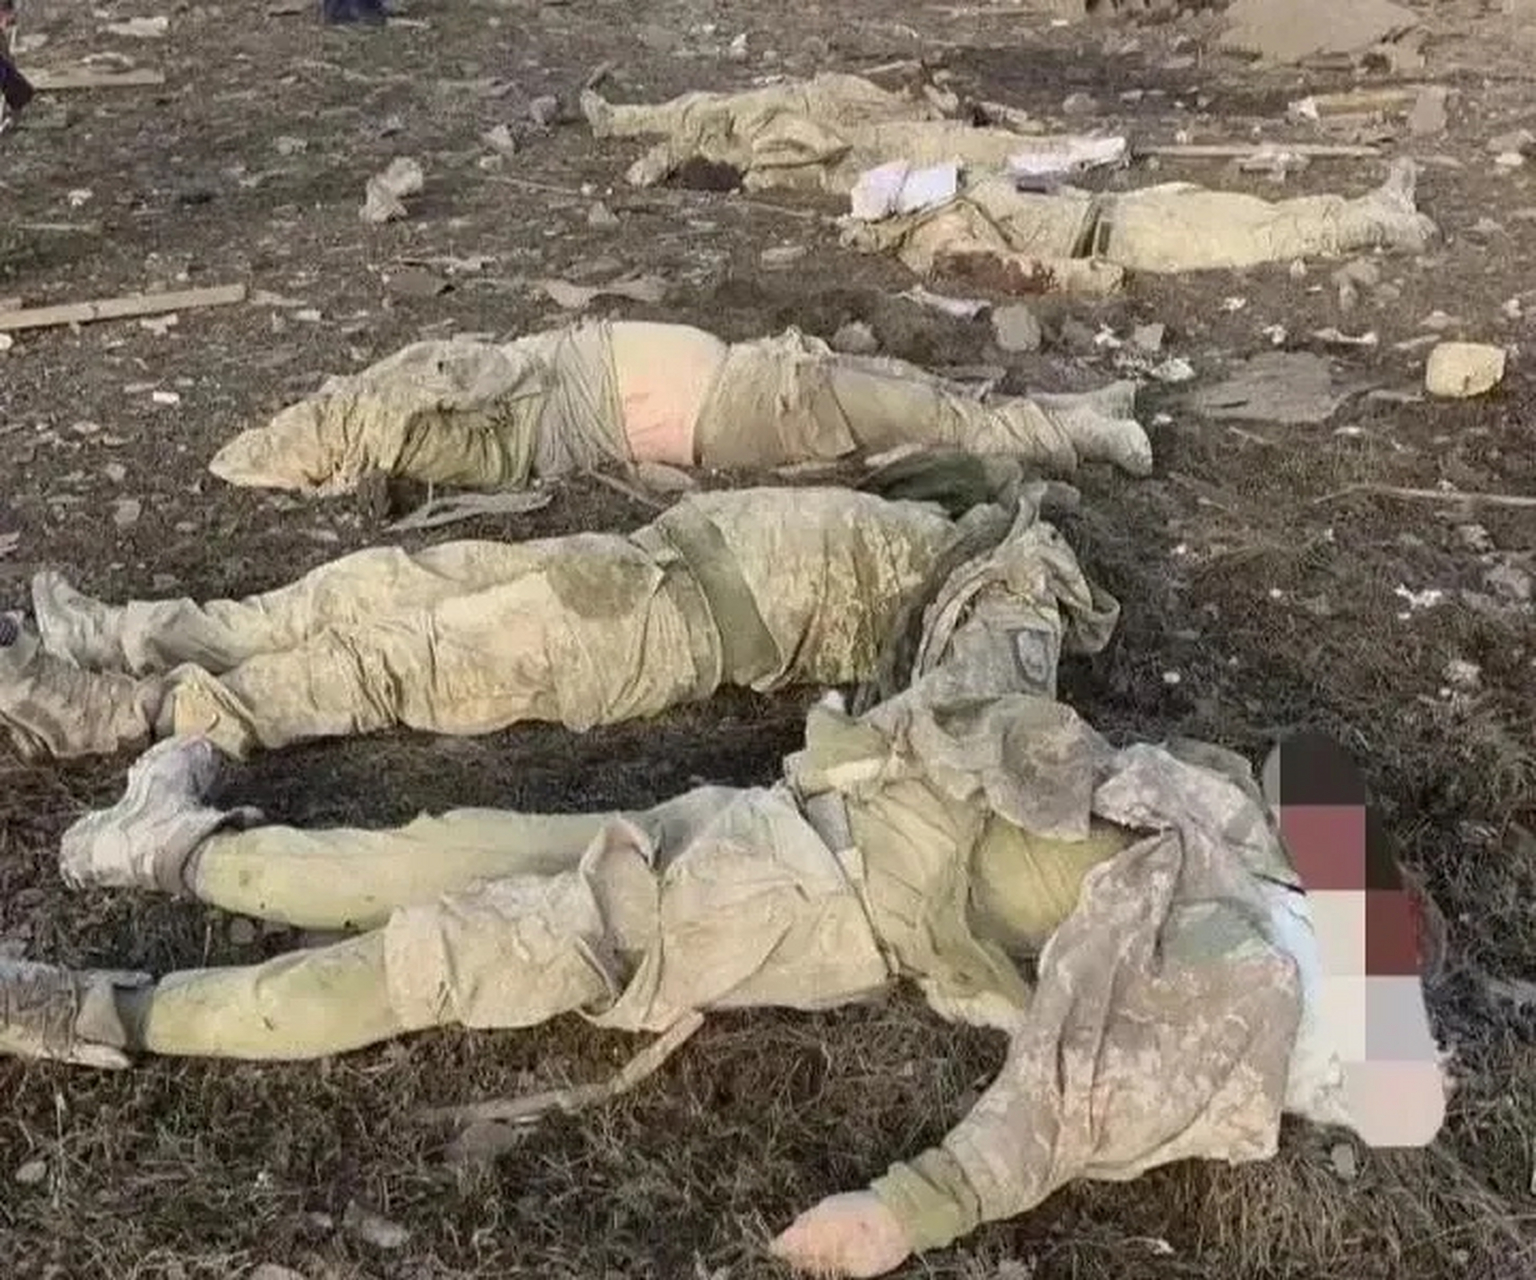 俄罗斯阵亡士兵图片图片